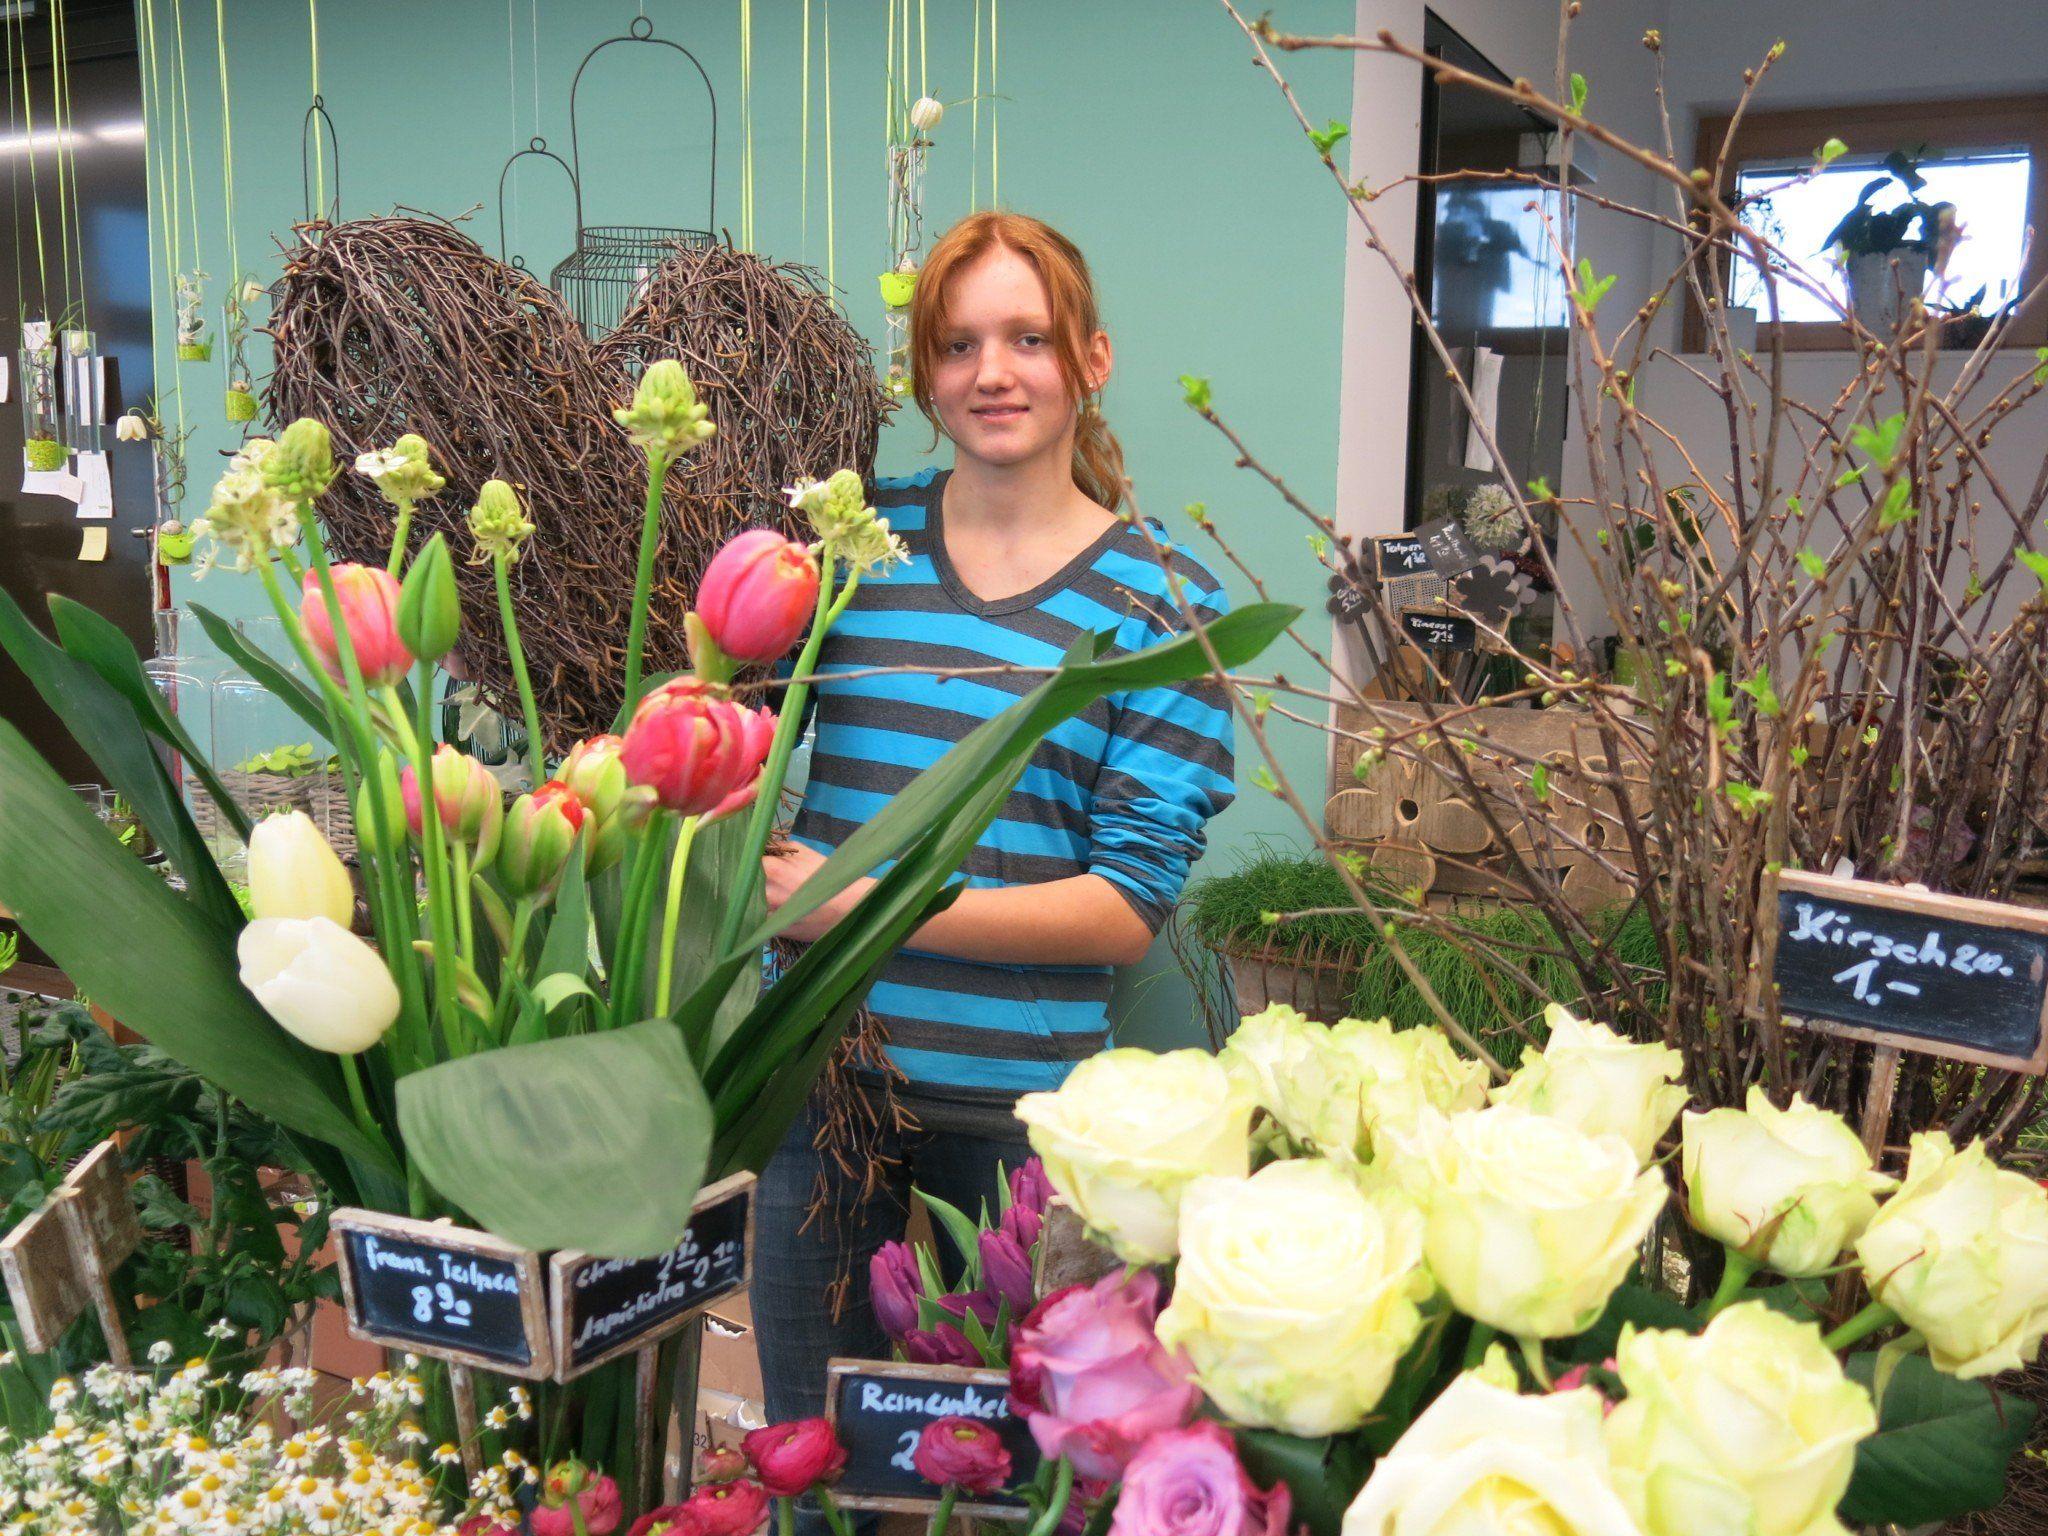 Lena Stecher lebt ihre Kreativität im Lehrberuf der Floristin aus.